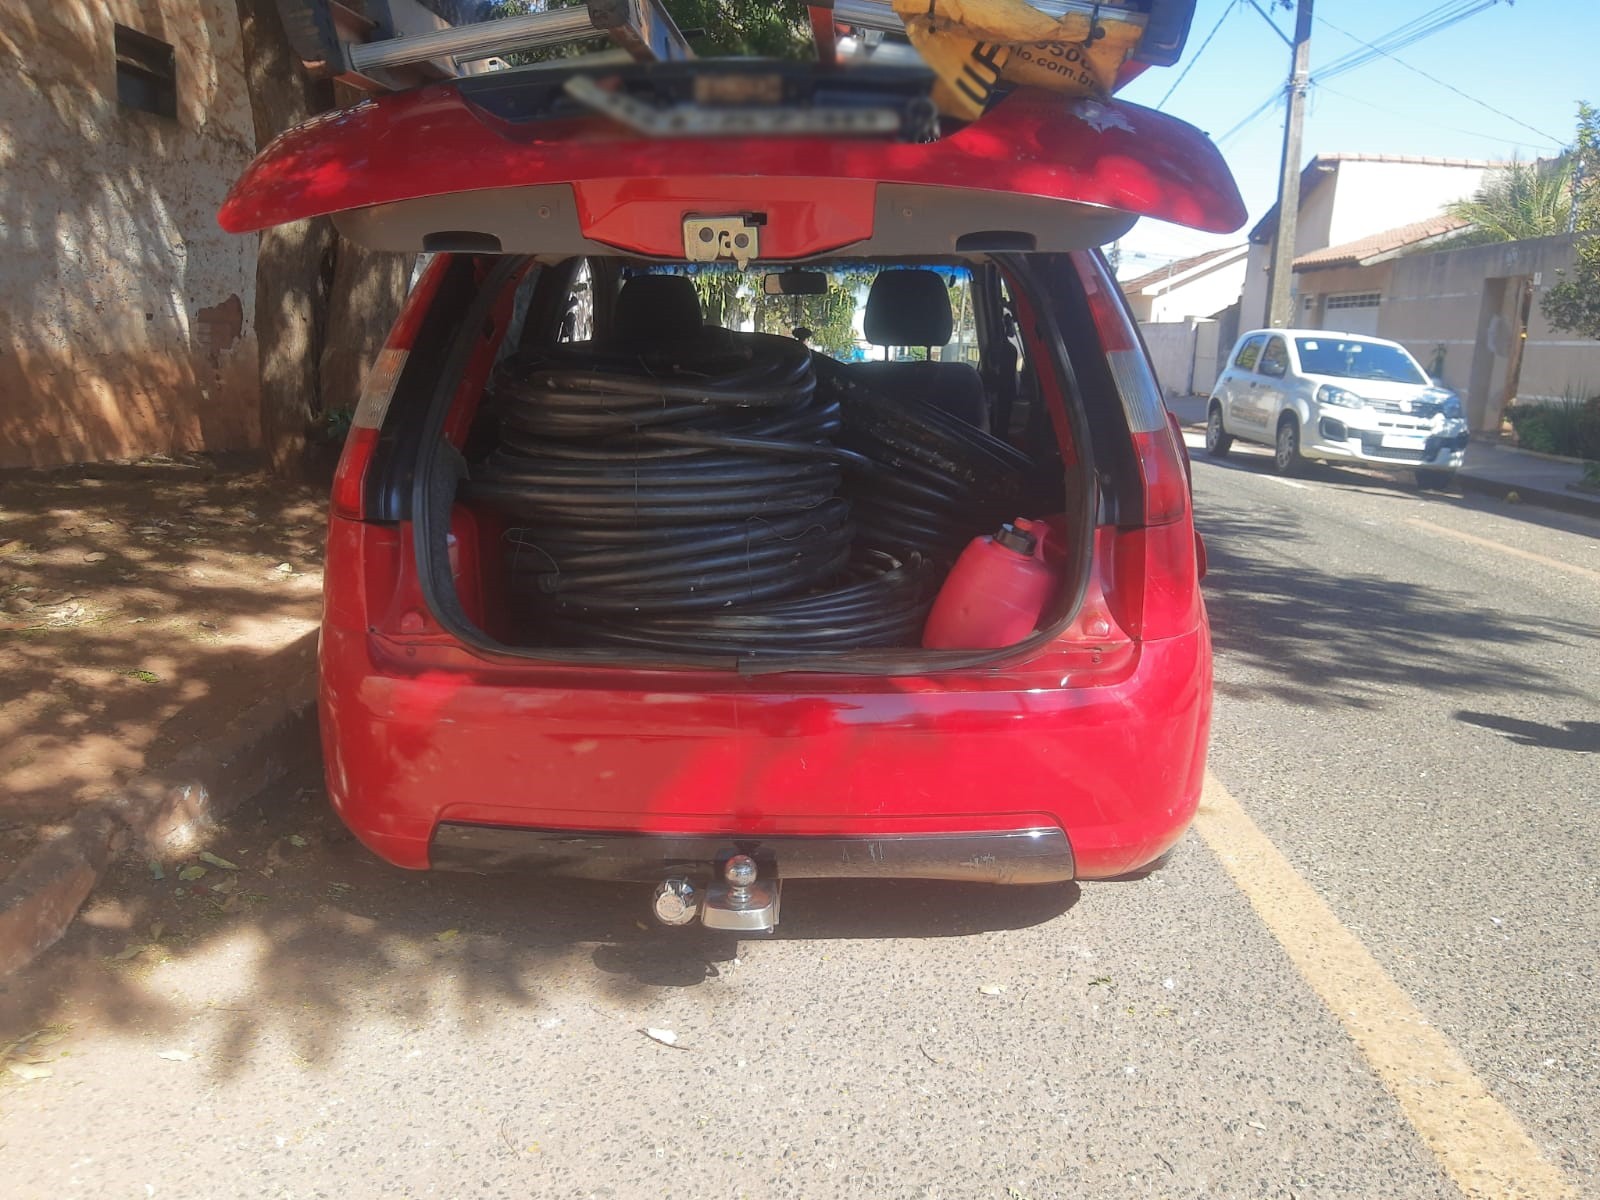 Dupla é presa com 1,5 tonelada de fios furtados em Araguari